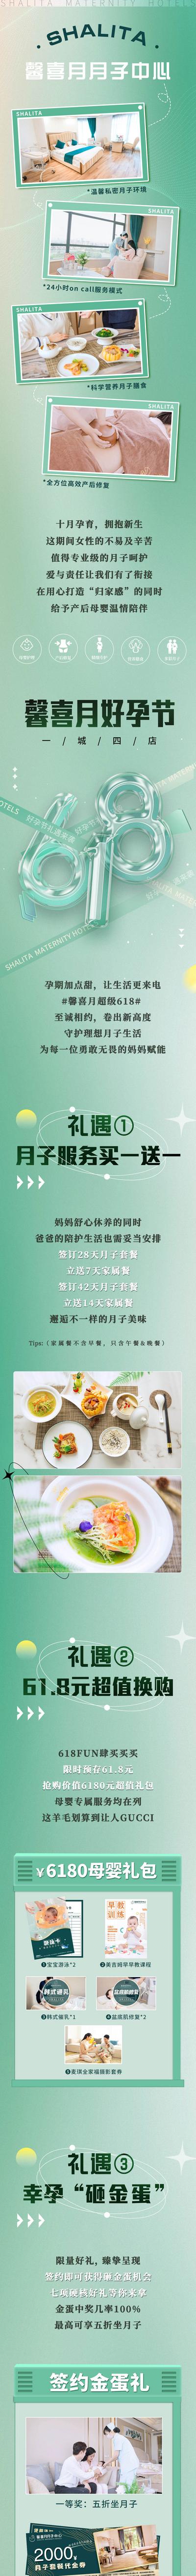 南门网 专题设计 长图 618 月子中心 母婴 促销 礼遇 活动 绿色 简约